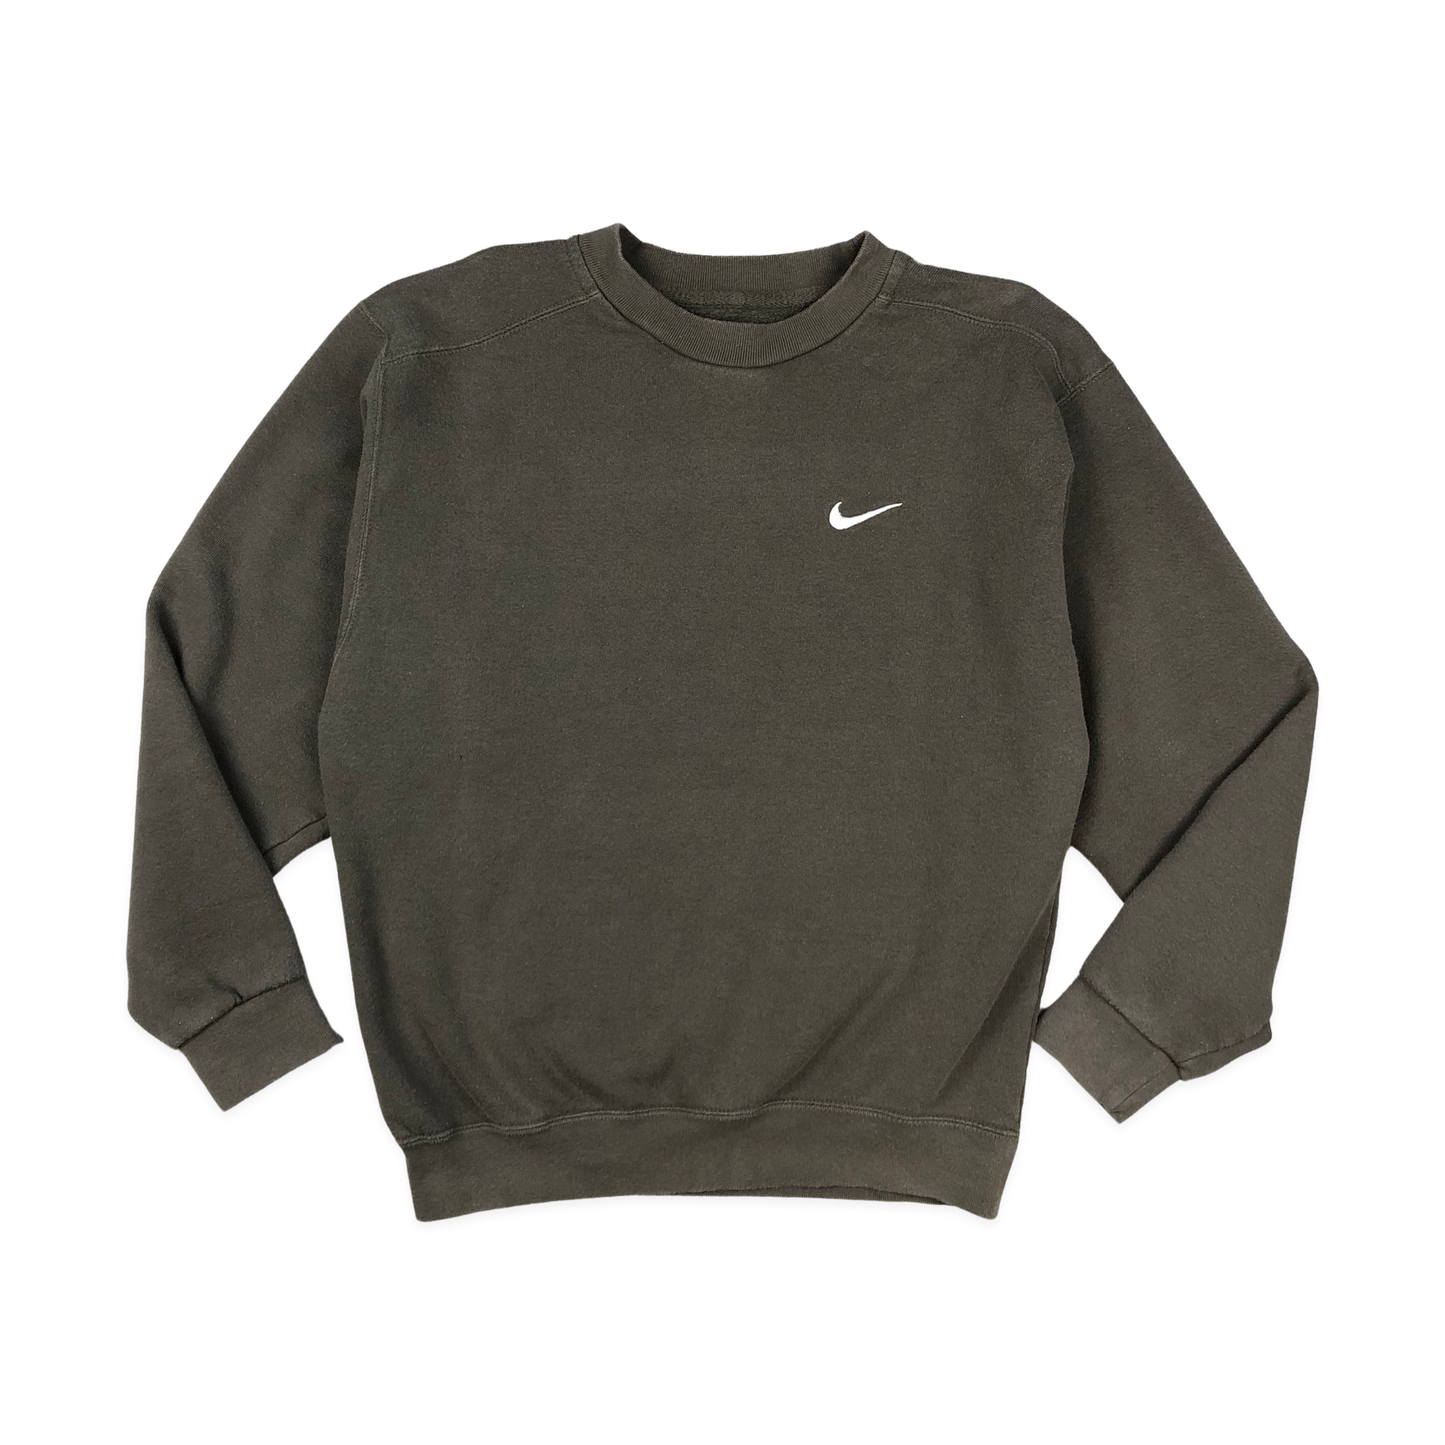 Vintage 90s Nike Brown Sweatshirt